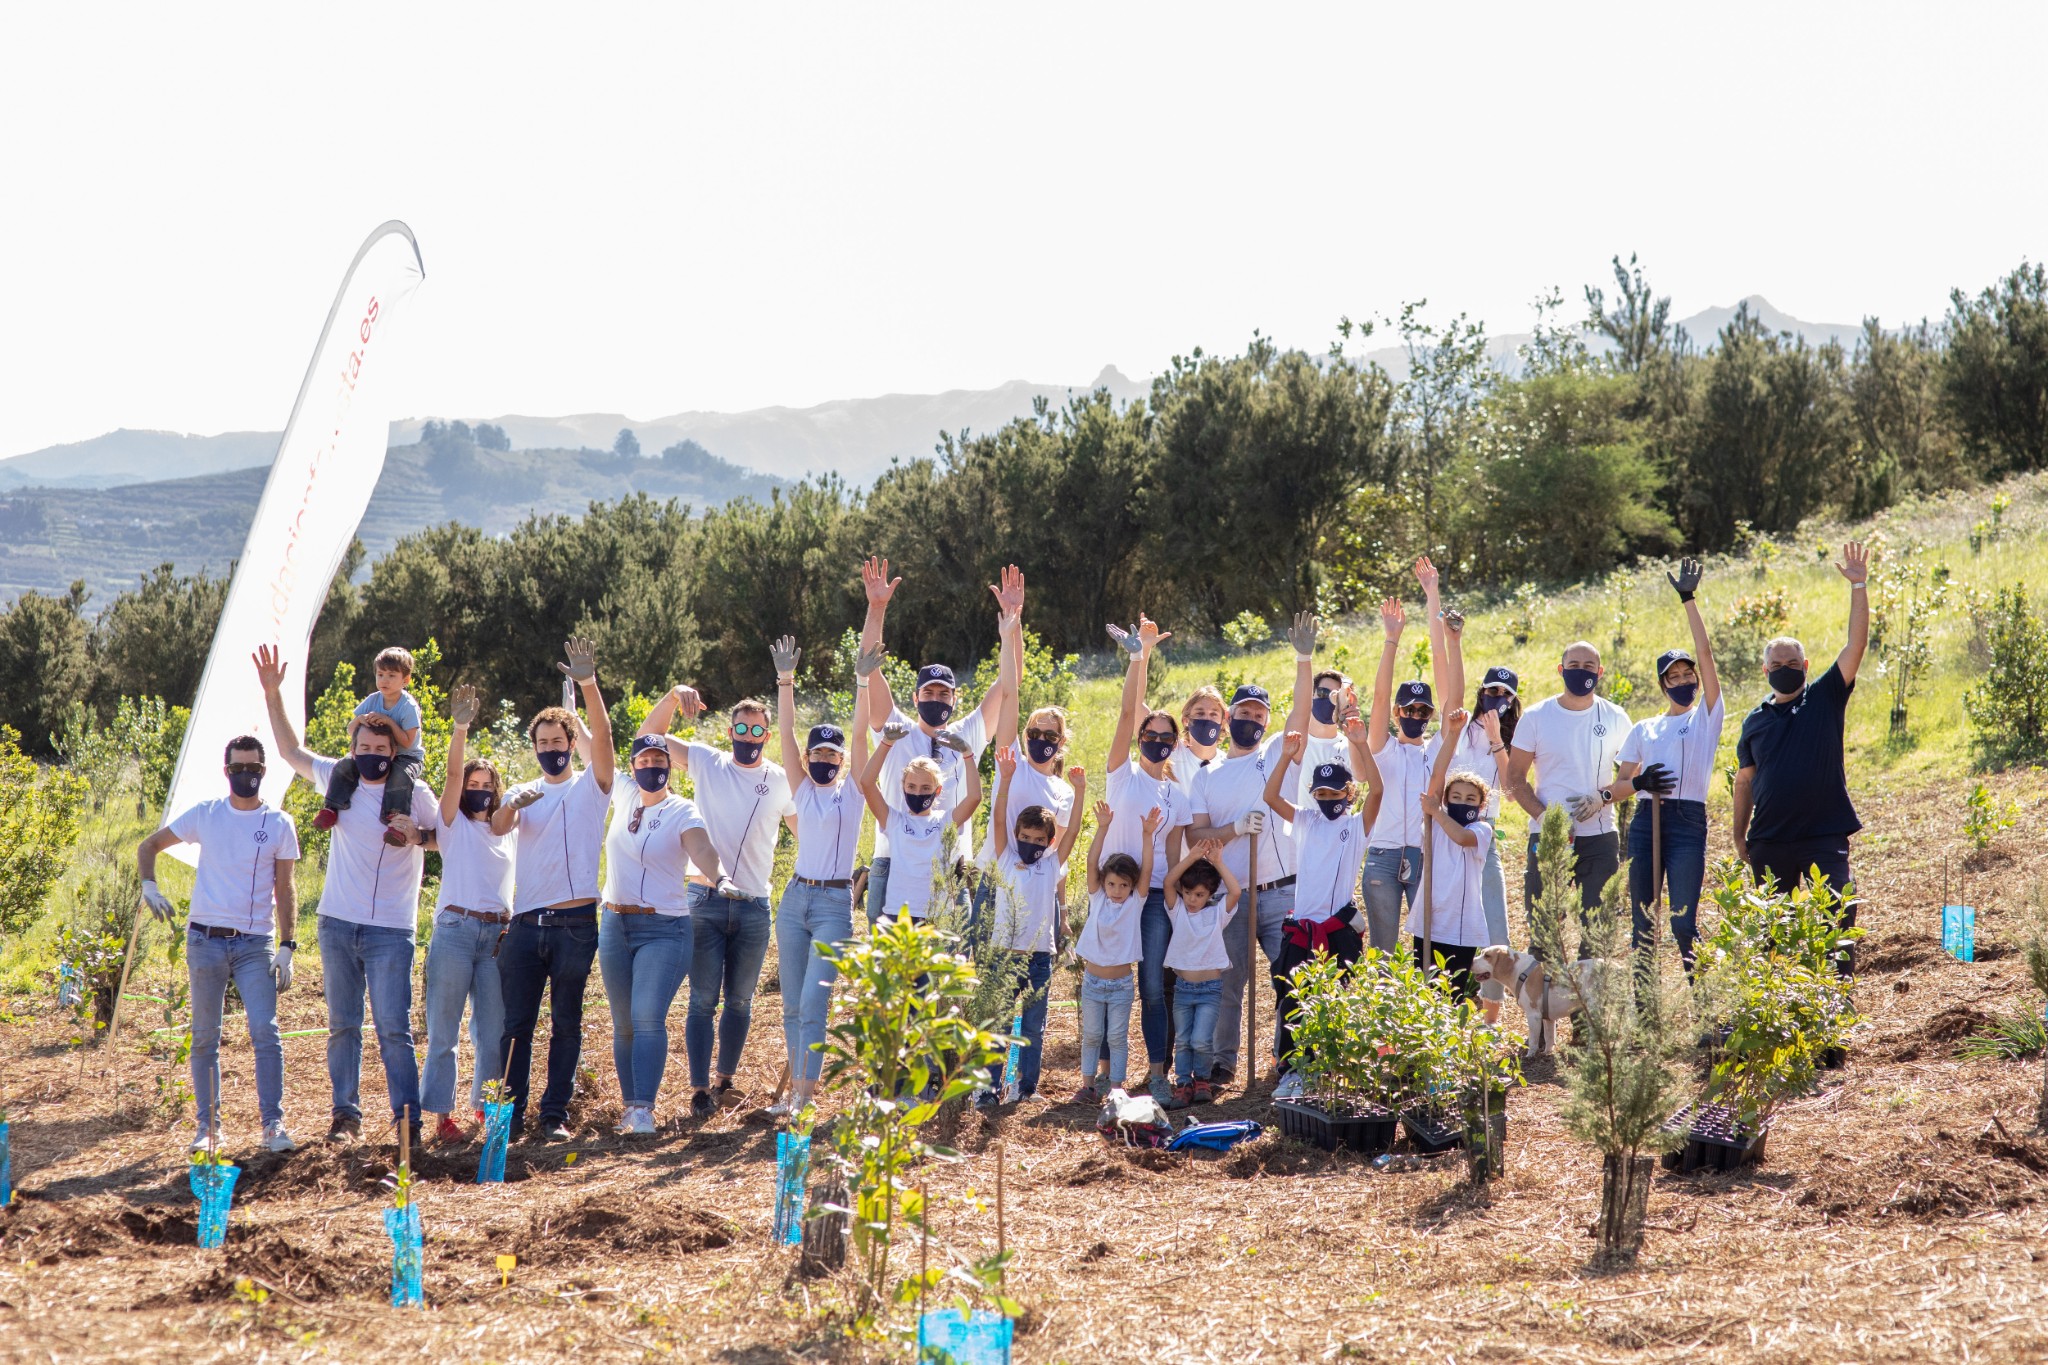 In Zusammenarbeit mit Foresta pflanzt Volkswagen Canarias nach dem Brand auf Gran Canaria im Jahr 2019 heimischs Gehölz. Mit insgesamt 2.000 Bäumen hat die Marke zur Wiederaufforstung des Lorbeerwaldes auf den Kanarischen Inseln beigetragen. Die Domingo Alonso Group, Importeur der Marke auf den Kanarischen Inseln, hat sich stets um die Erhaltung der Umwelt bemüht und geht mit der Spende eines Häckslers einen Schritt weiter, um die tägliche Arbeit der Foresta Foundation und Präventionsaufgaben zu unterstützen .